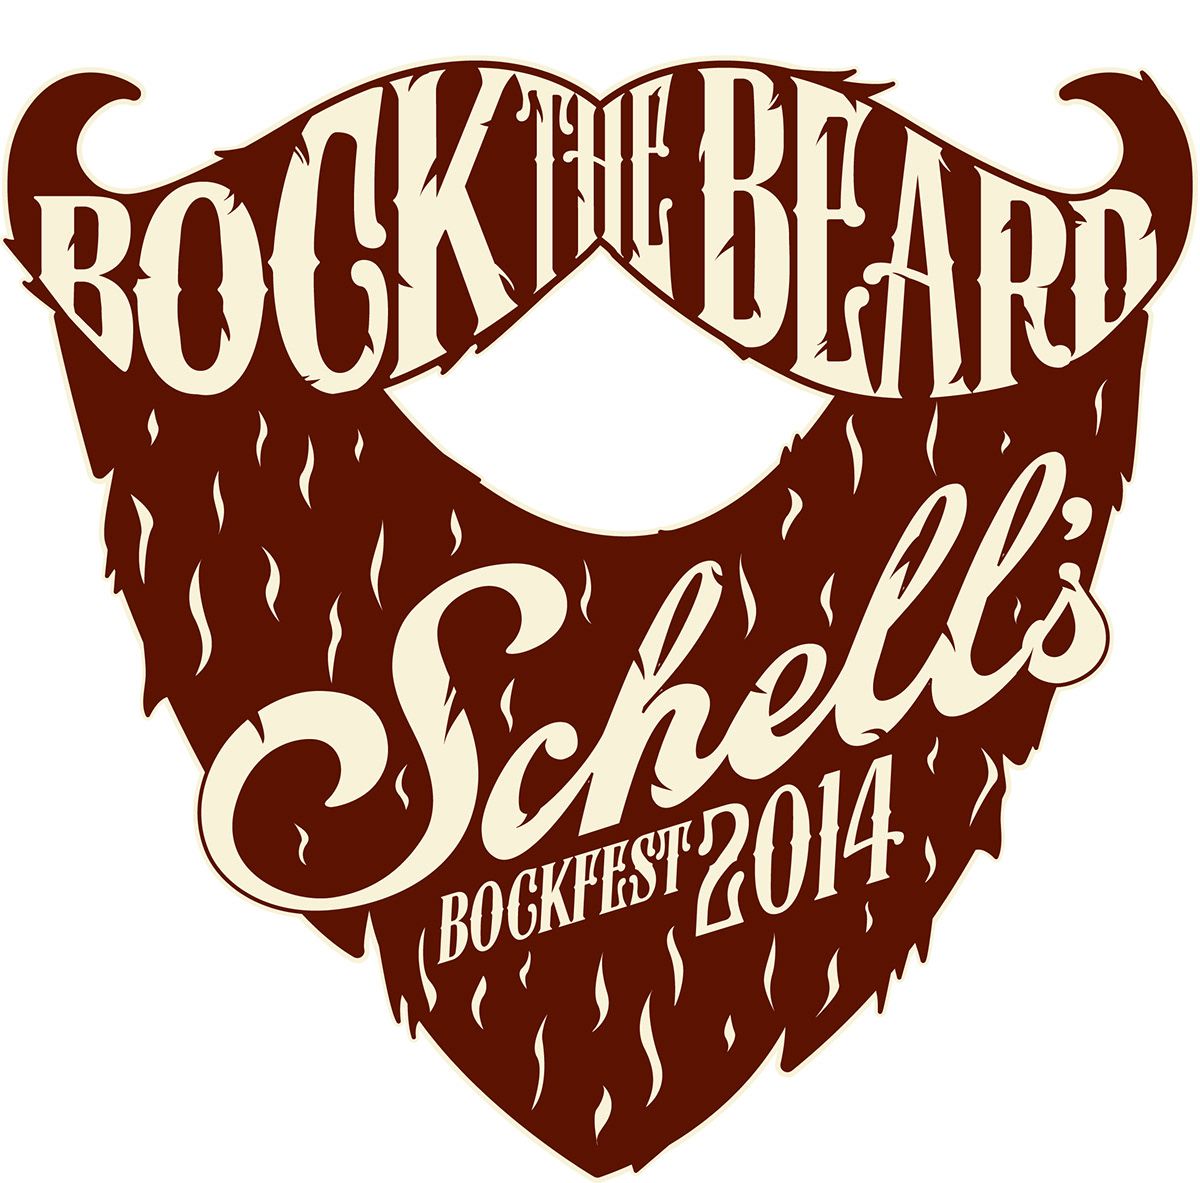 Bock the Beard Schell's beer beard